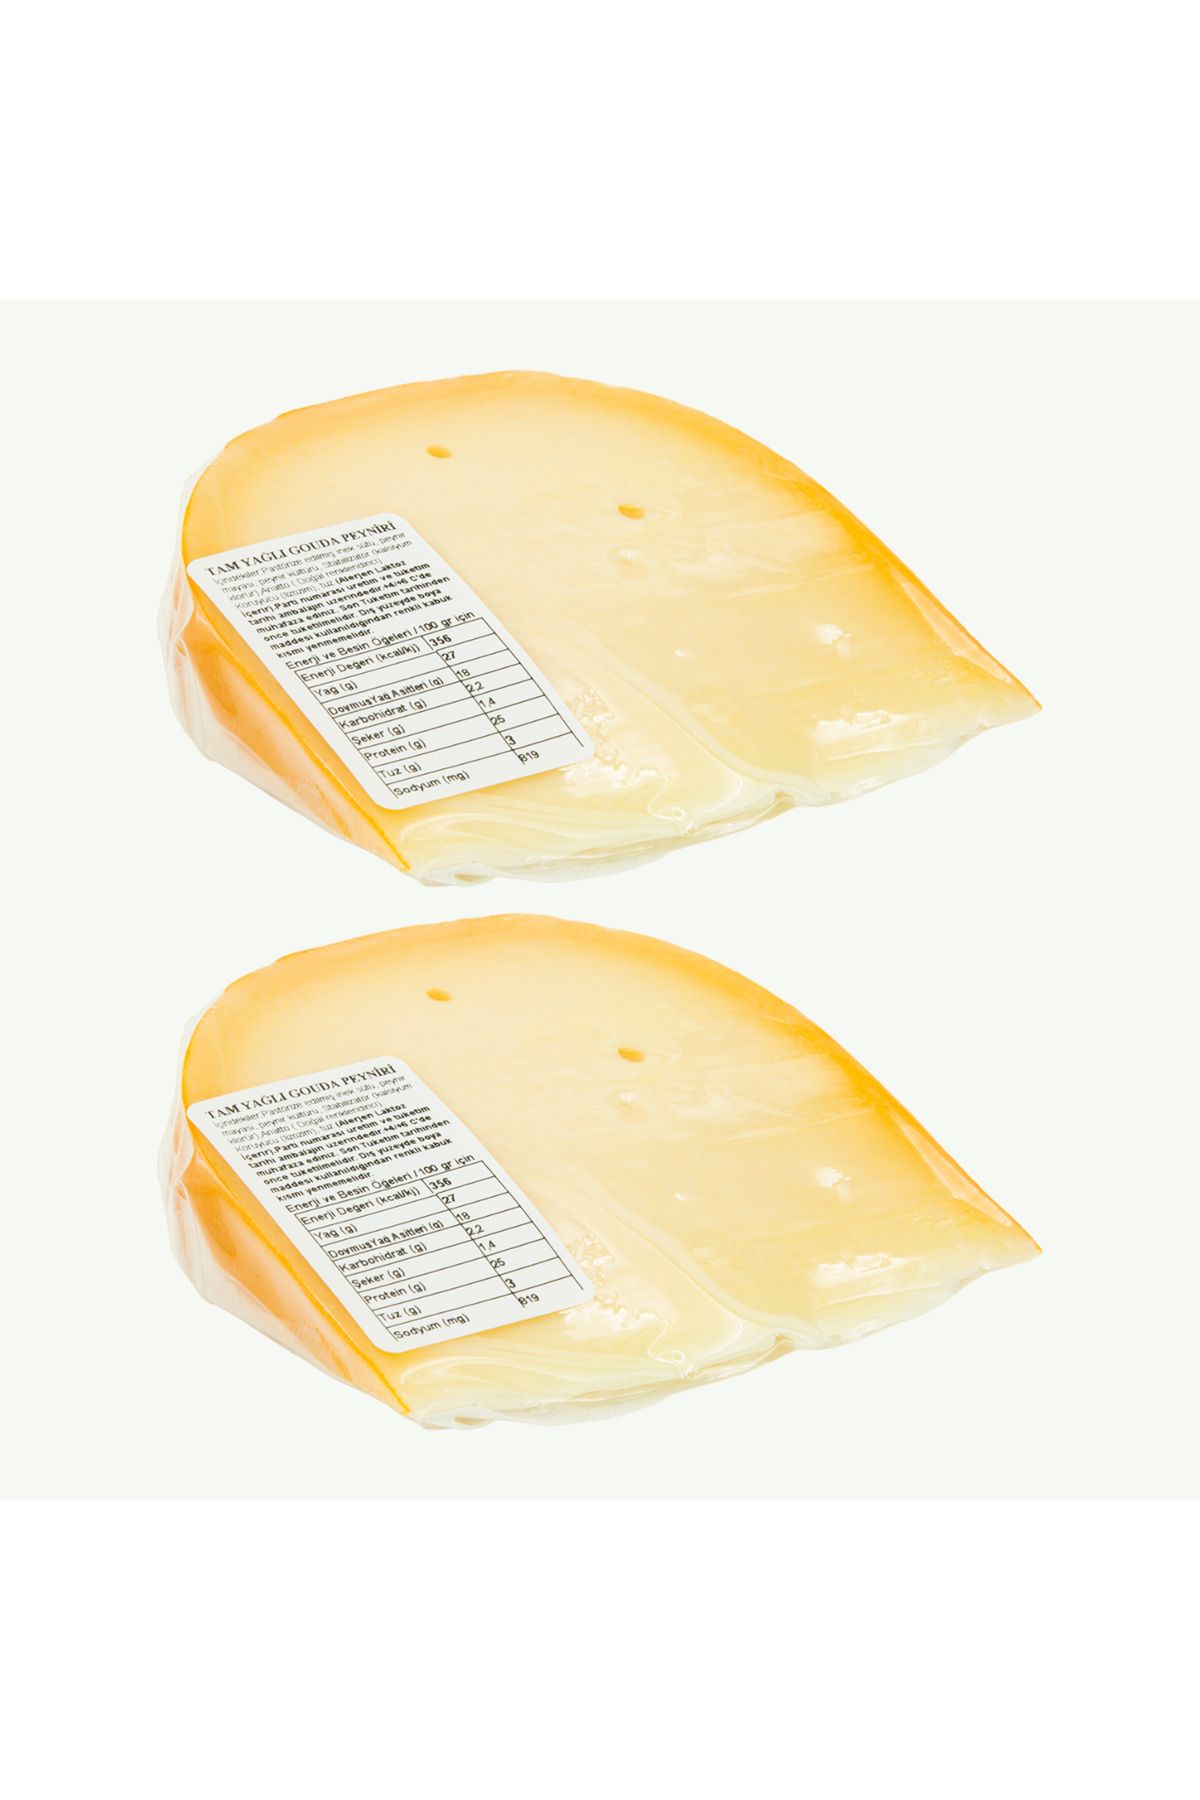 Amesia Gouda Peyniri 220 g. 2 adet